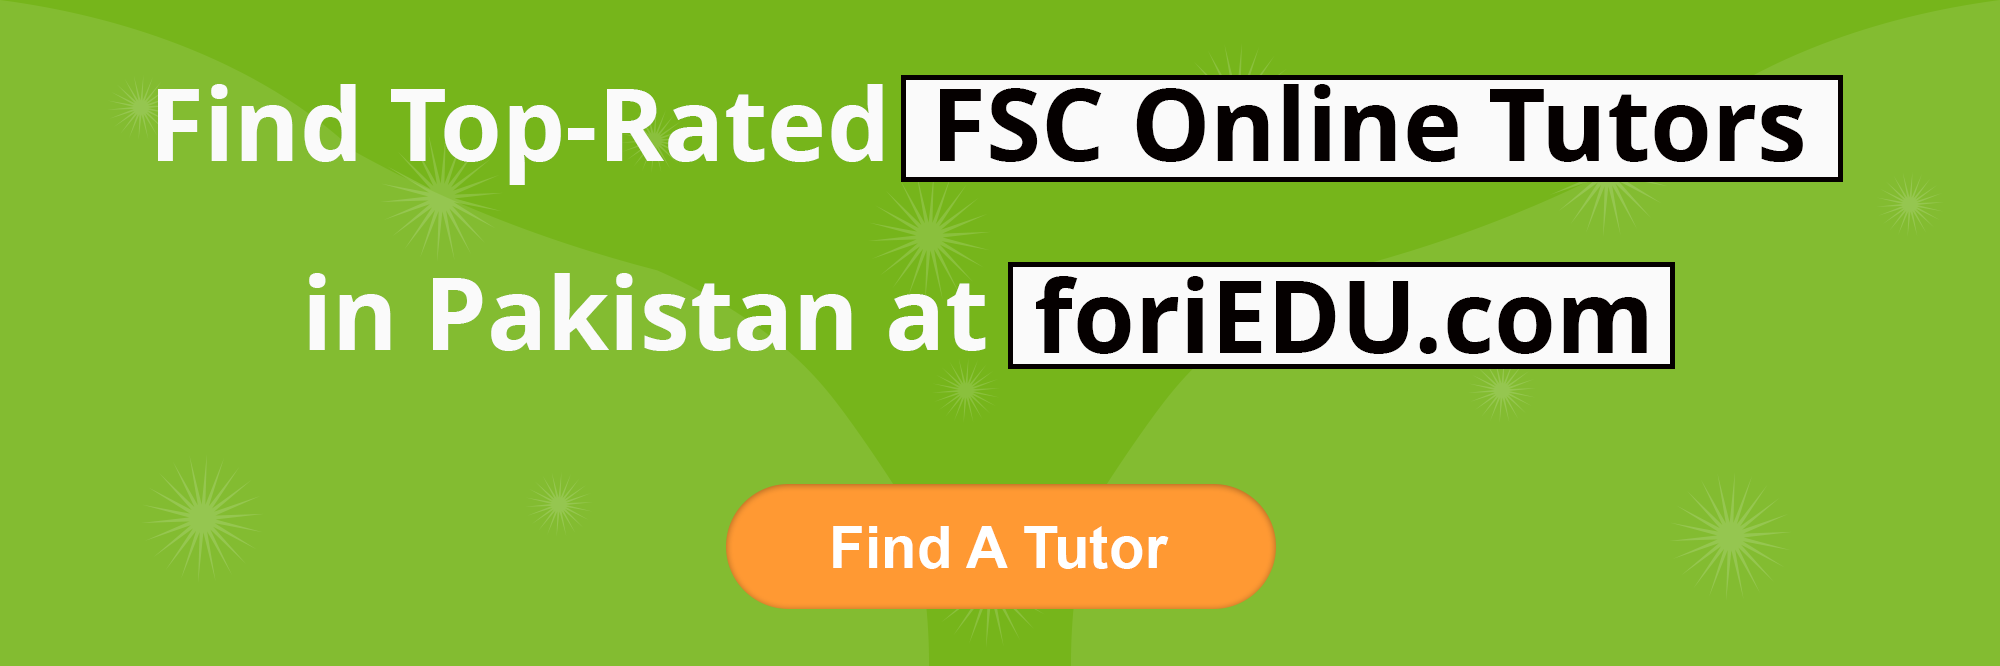 FSC Online Tutors in Pakistan 3